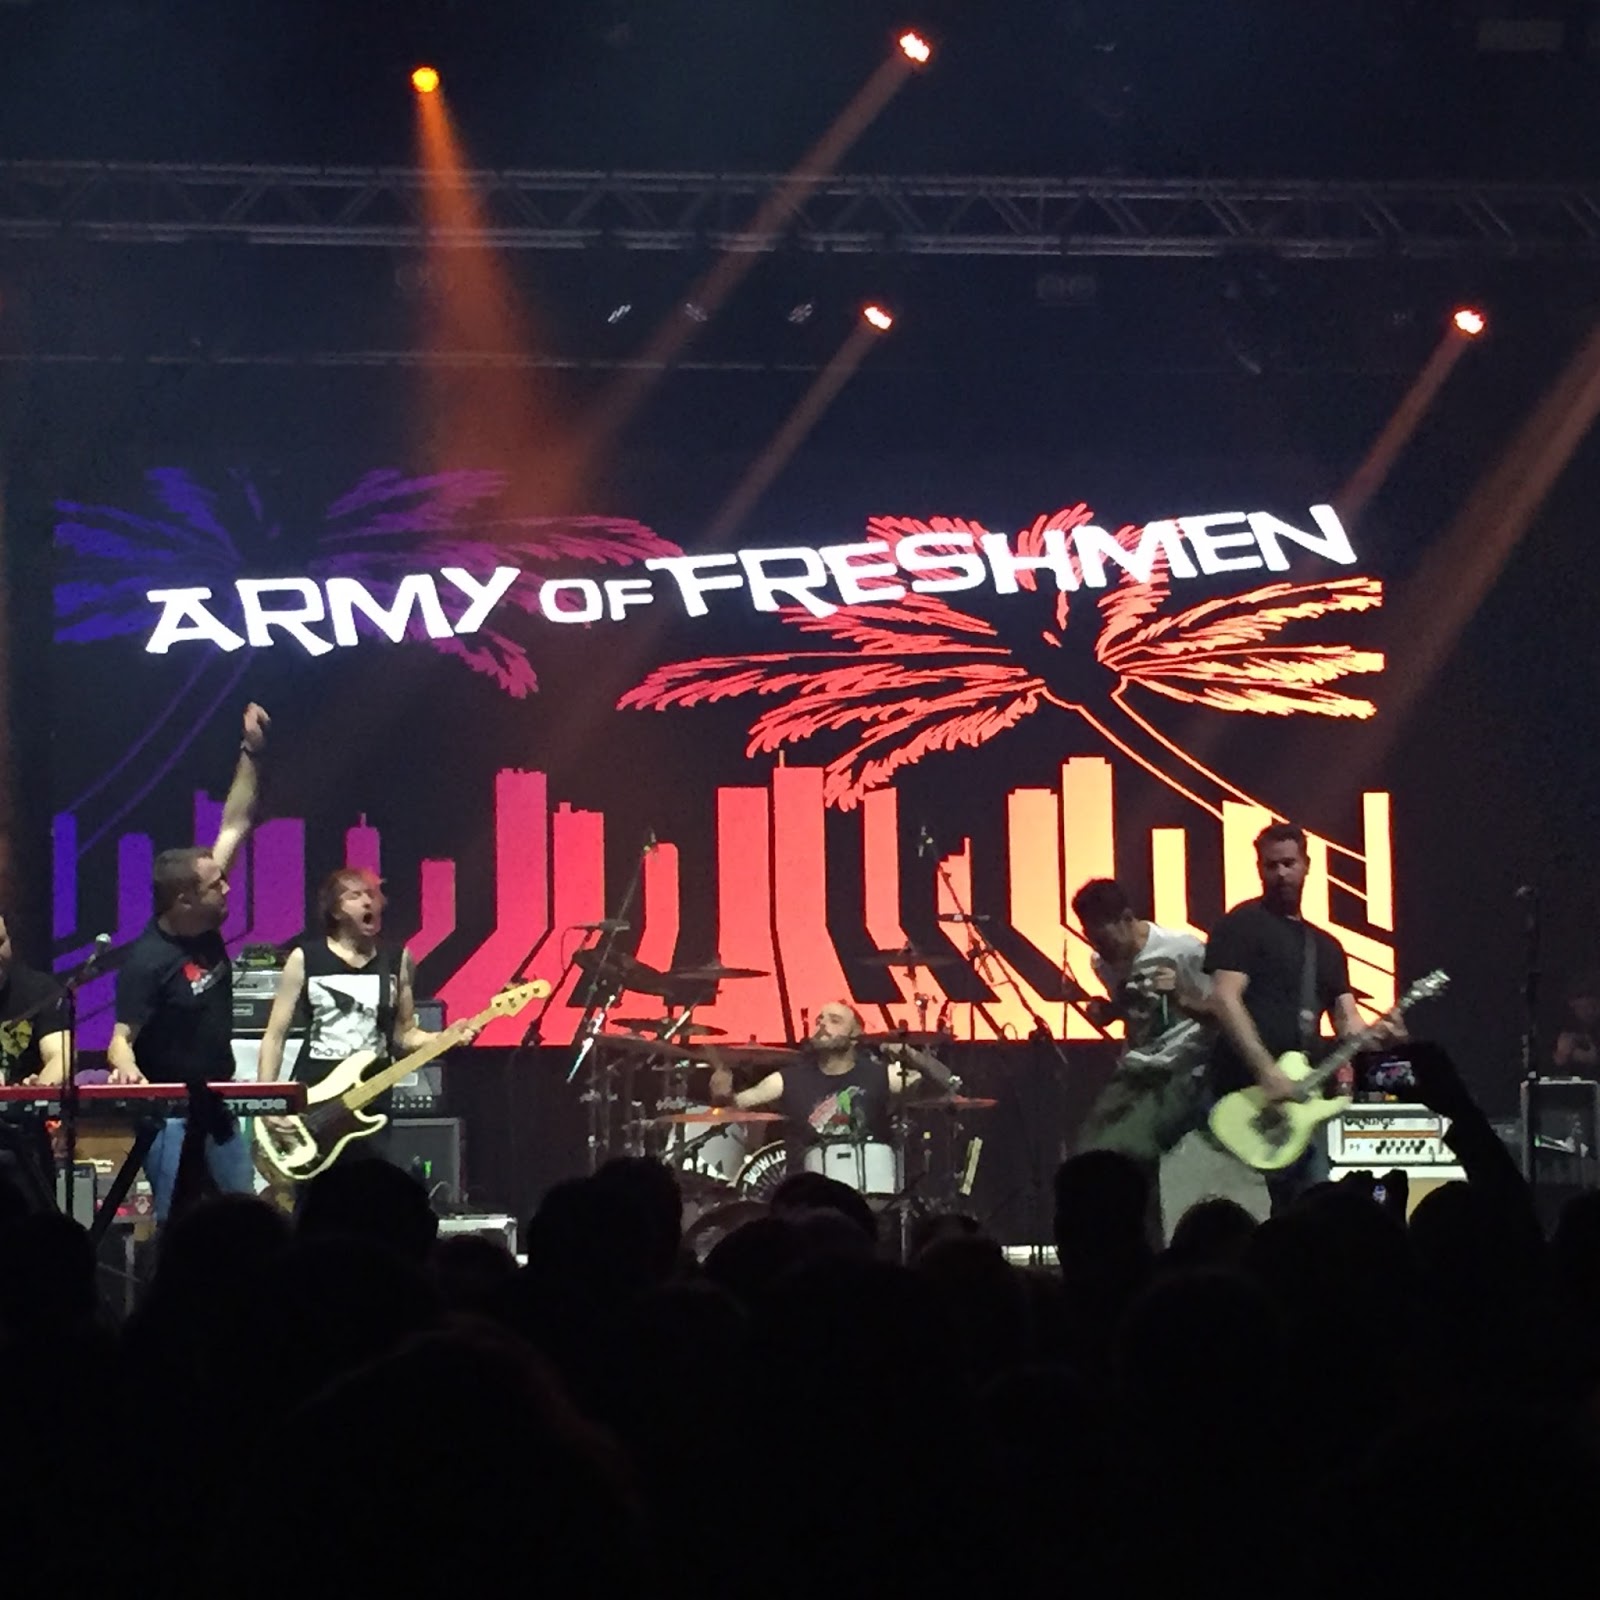 Army of freshmen Manchester at Apollo 2018